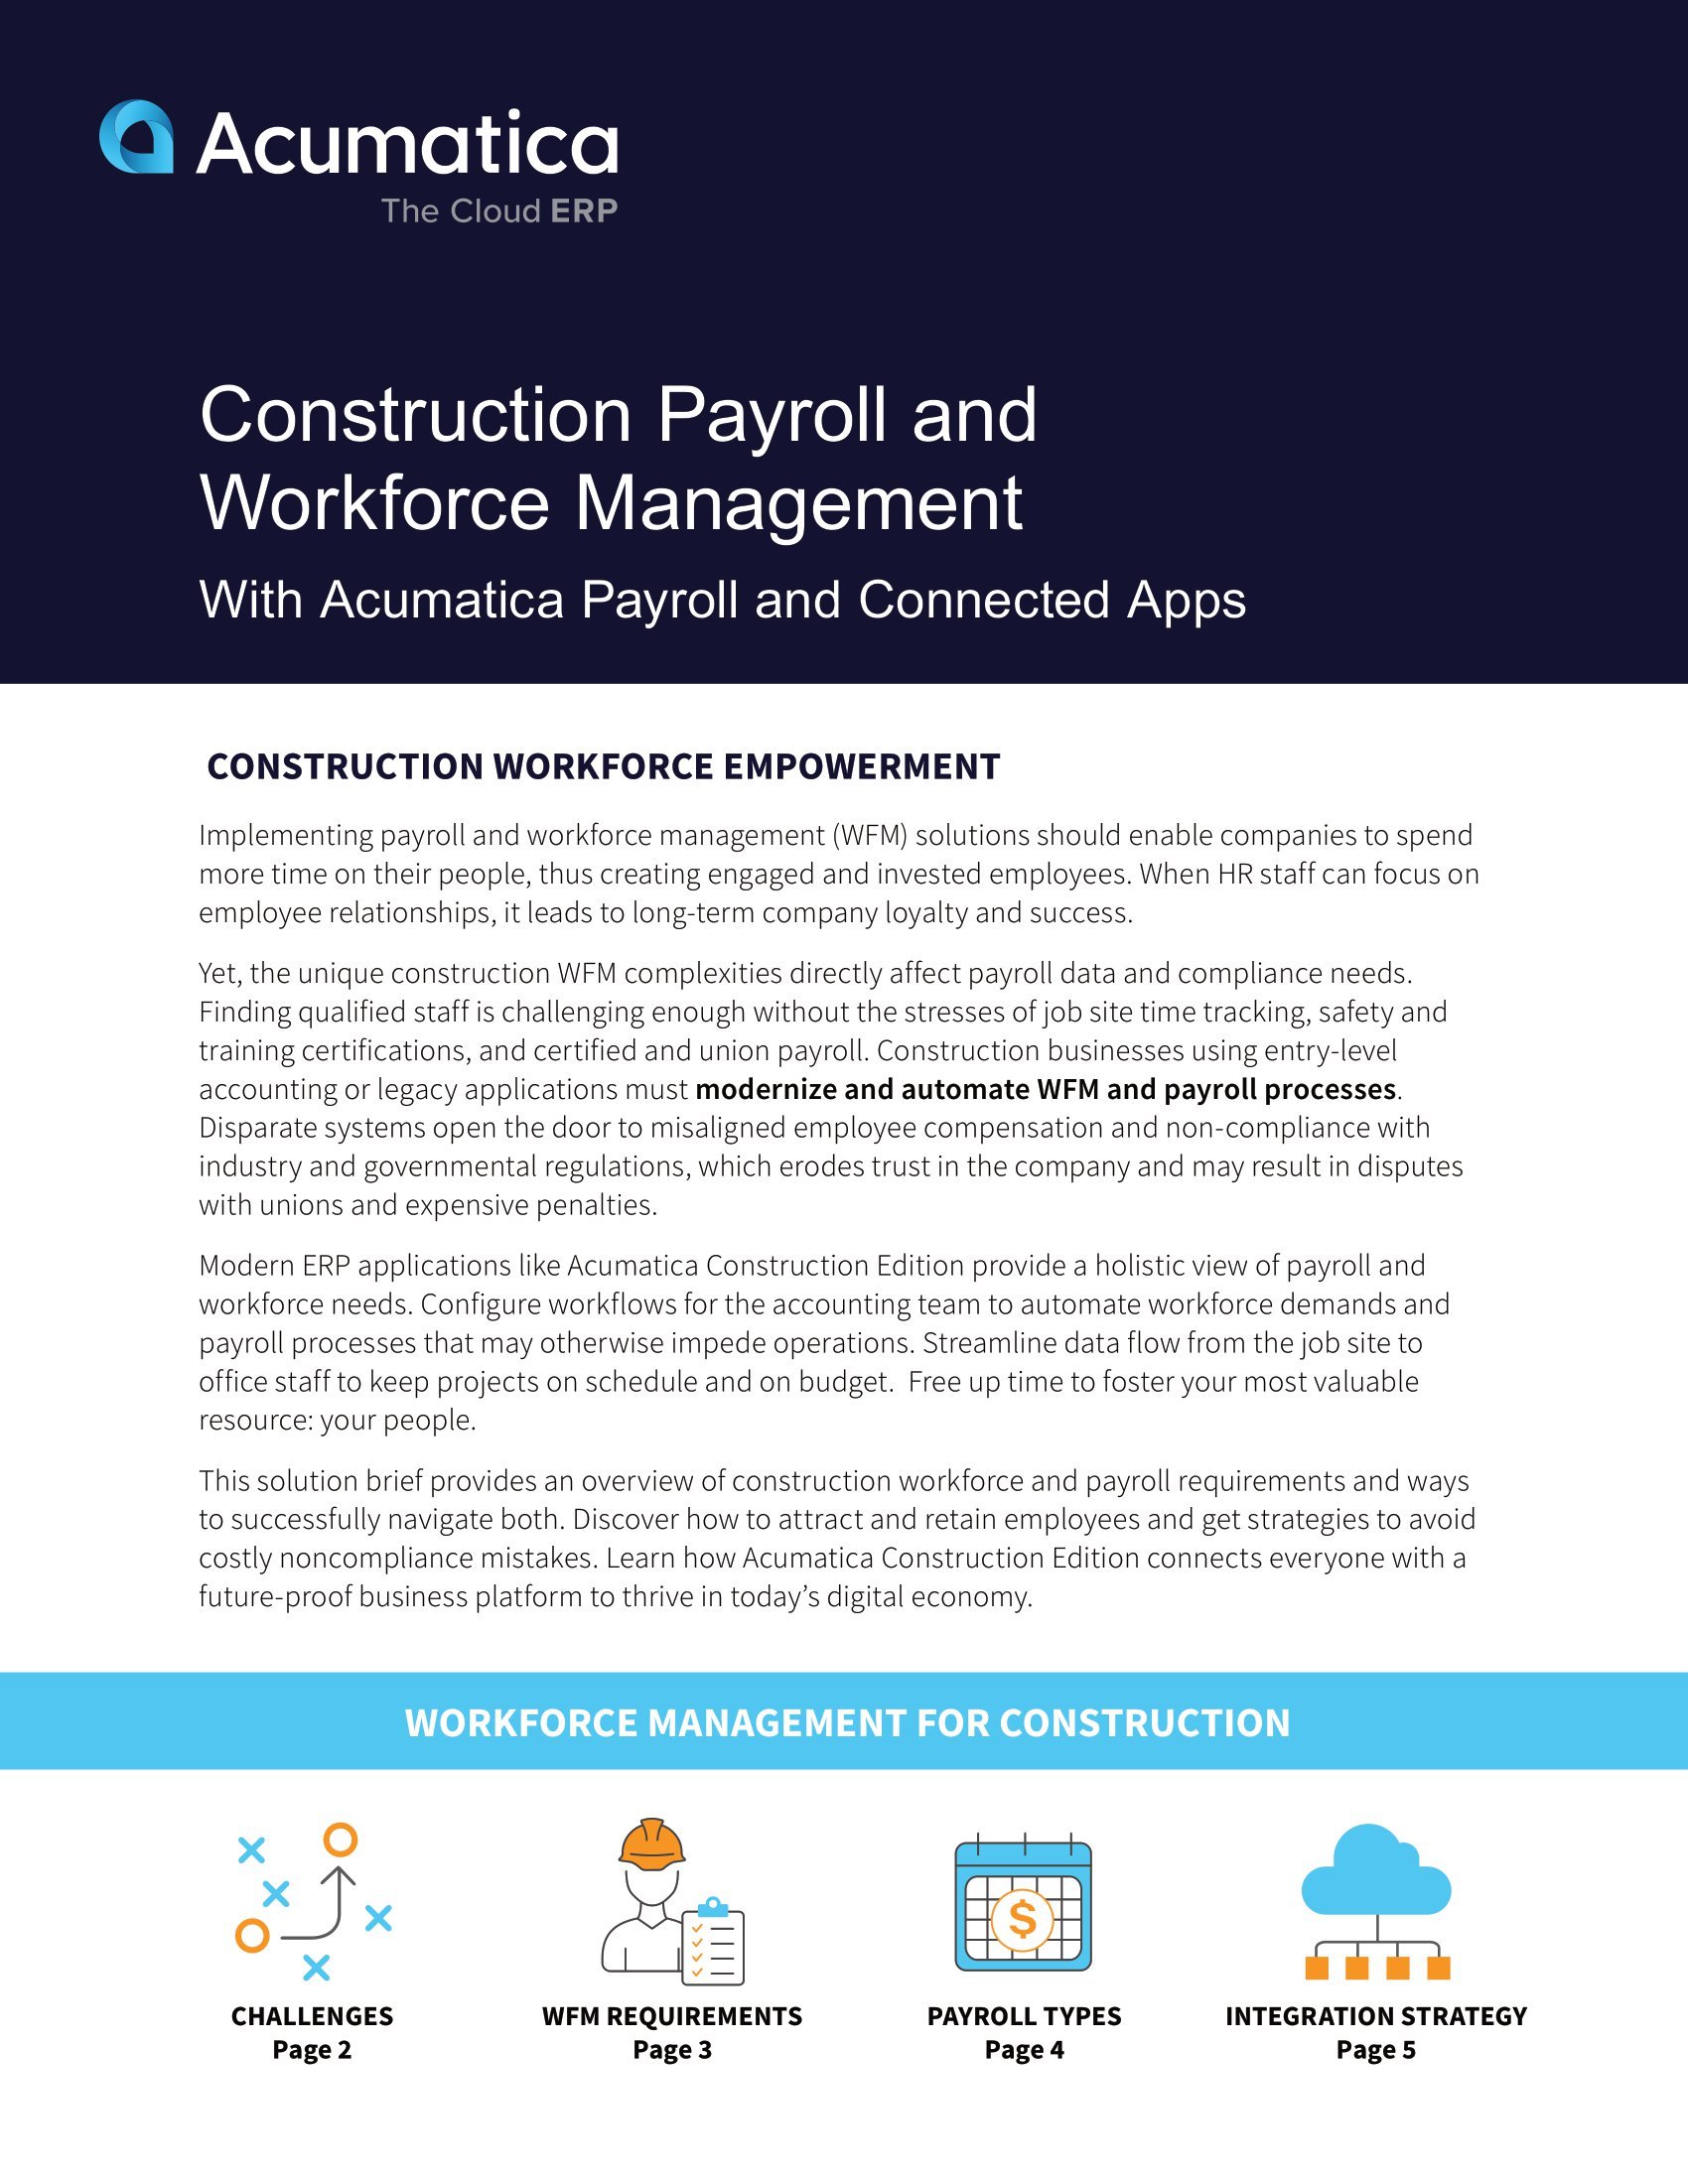 Éliminez les frustrations liées à la gestion de la main-d’œuvre et à la paie avec Acumatica Construction Edition